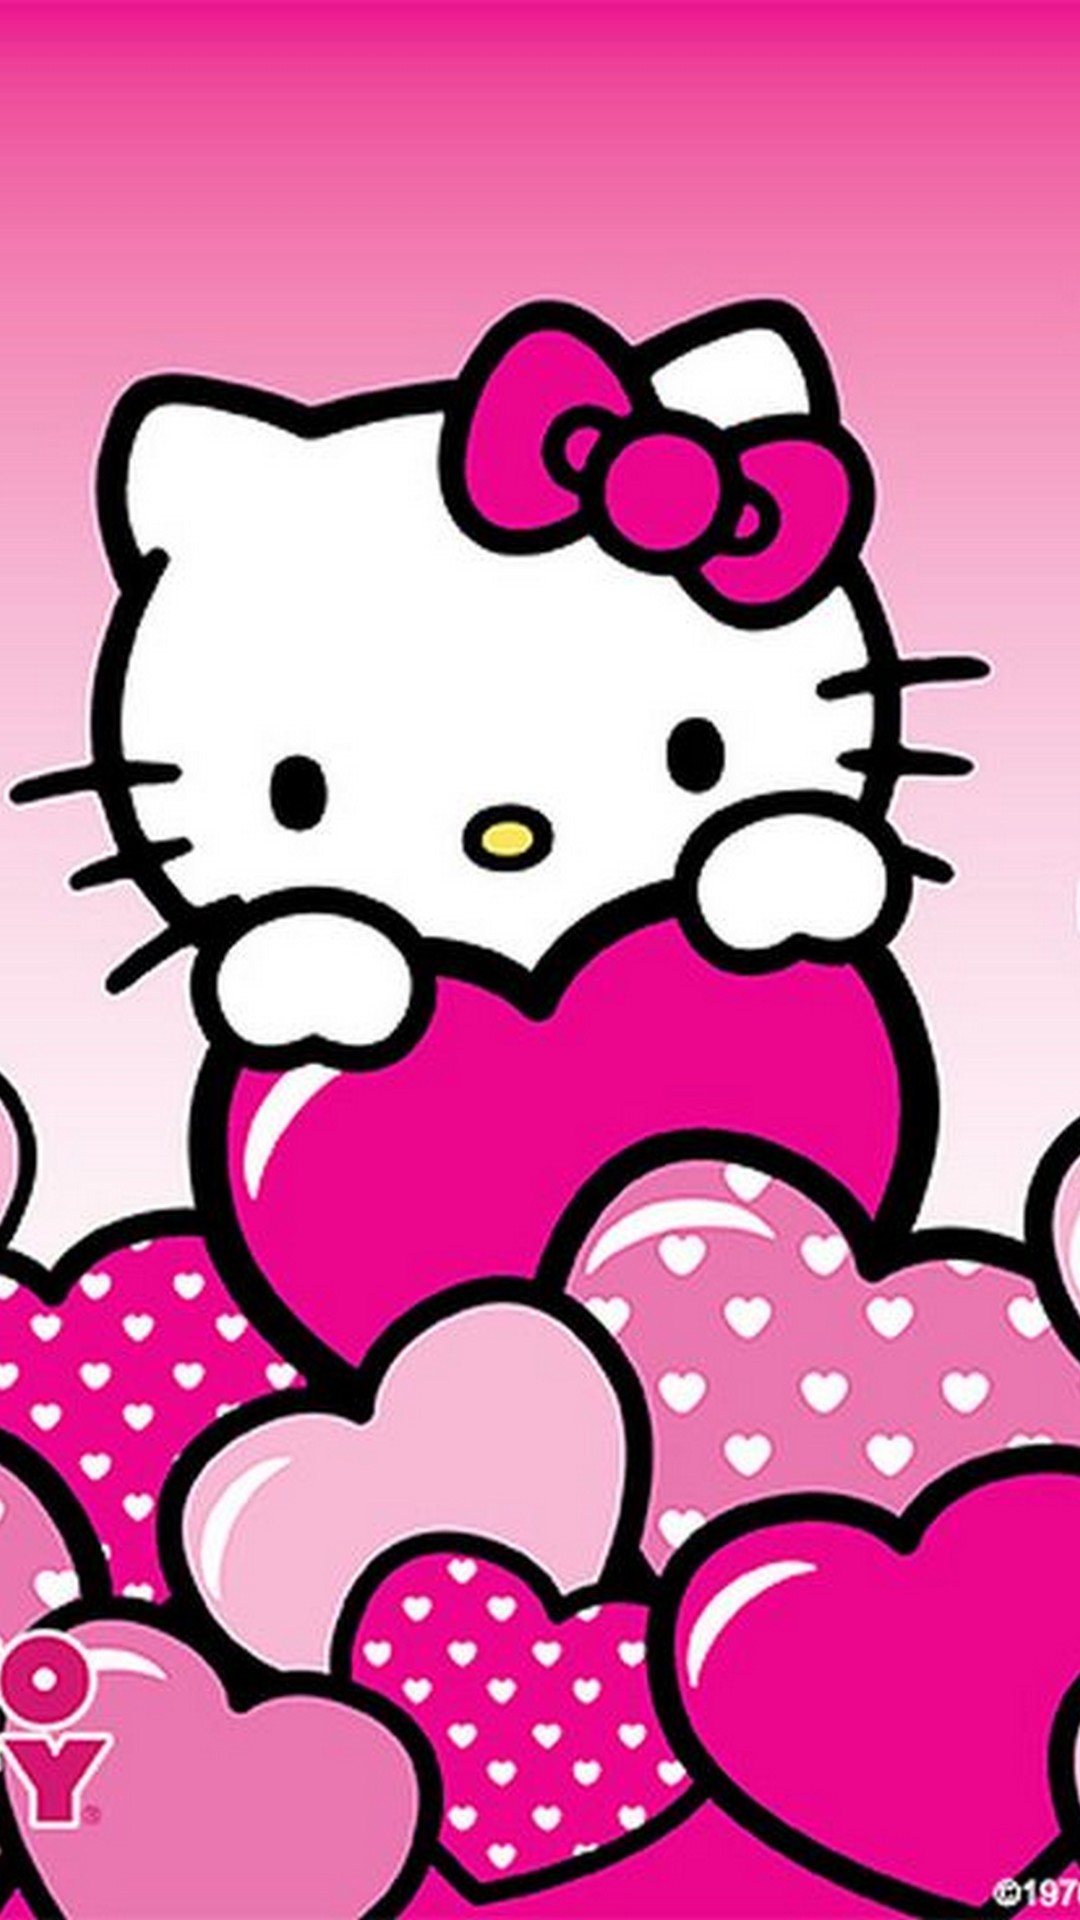 bonjour kitty fond d'écran iphone,rose,cœur,clipart,dessin animé,conception